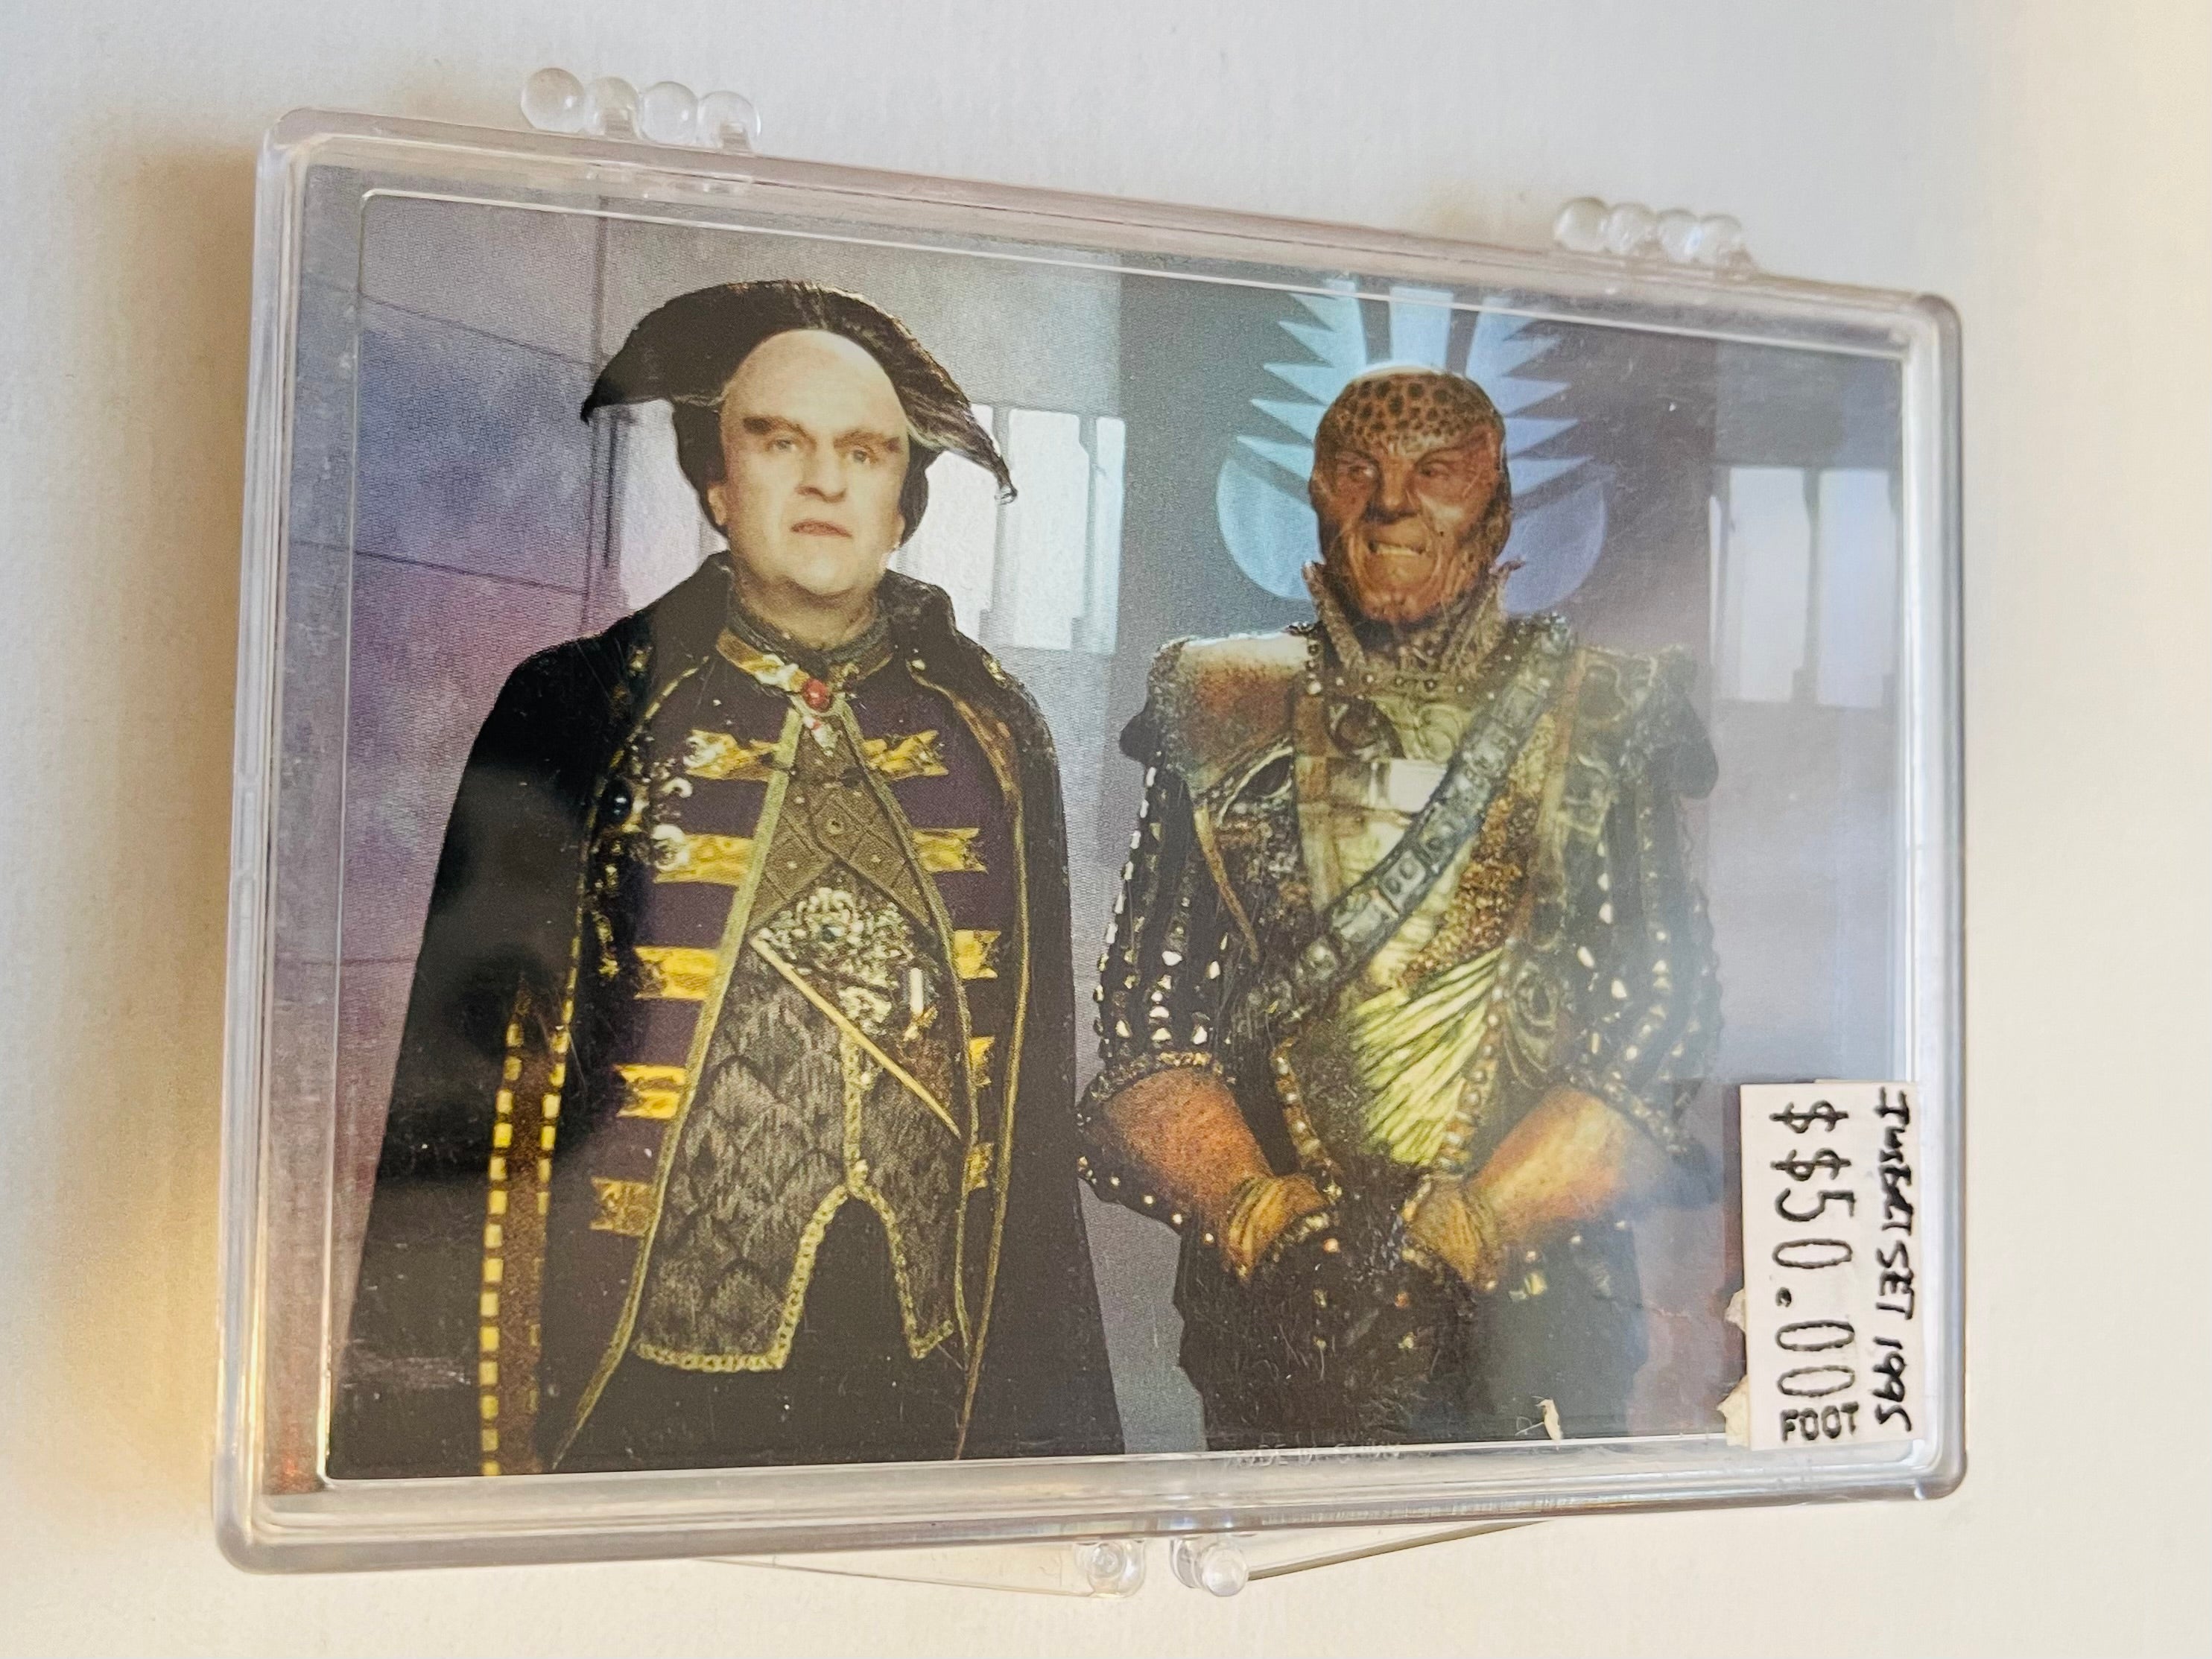 Babylon 5 Prismatic foil insert cards set 1995